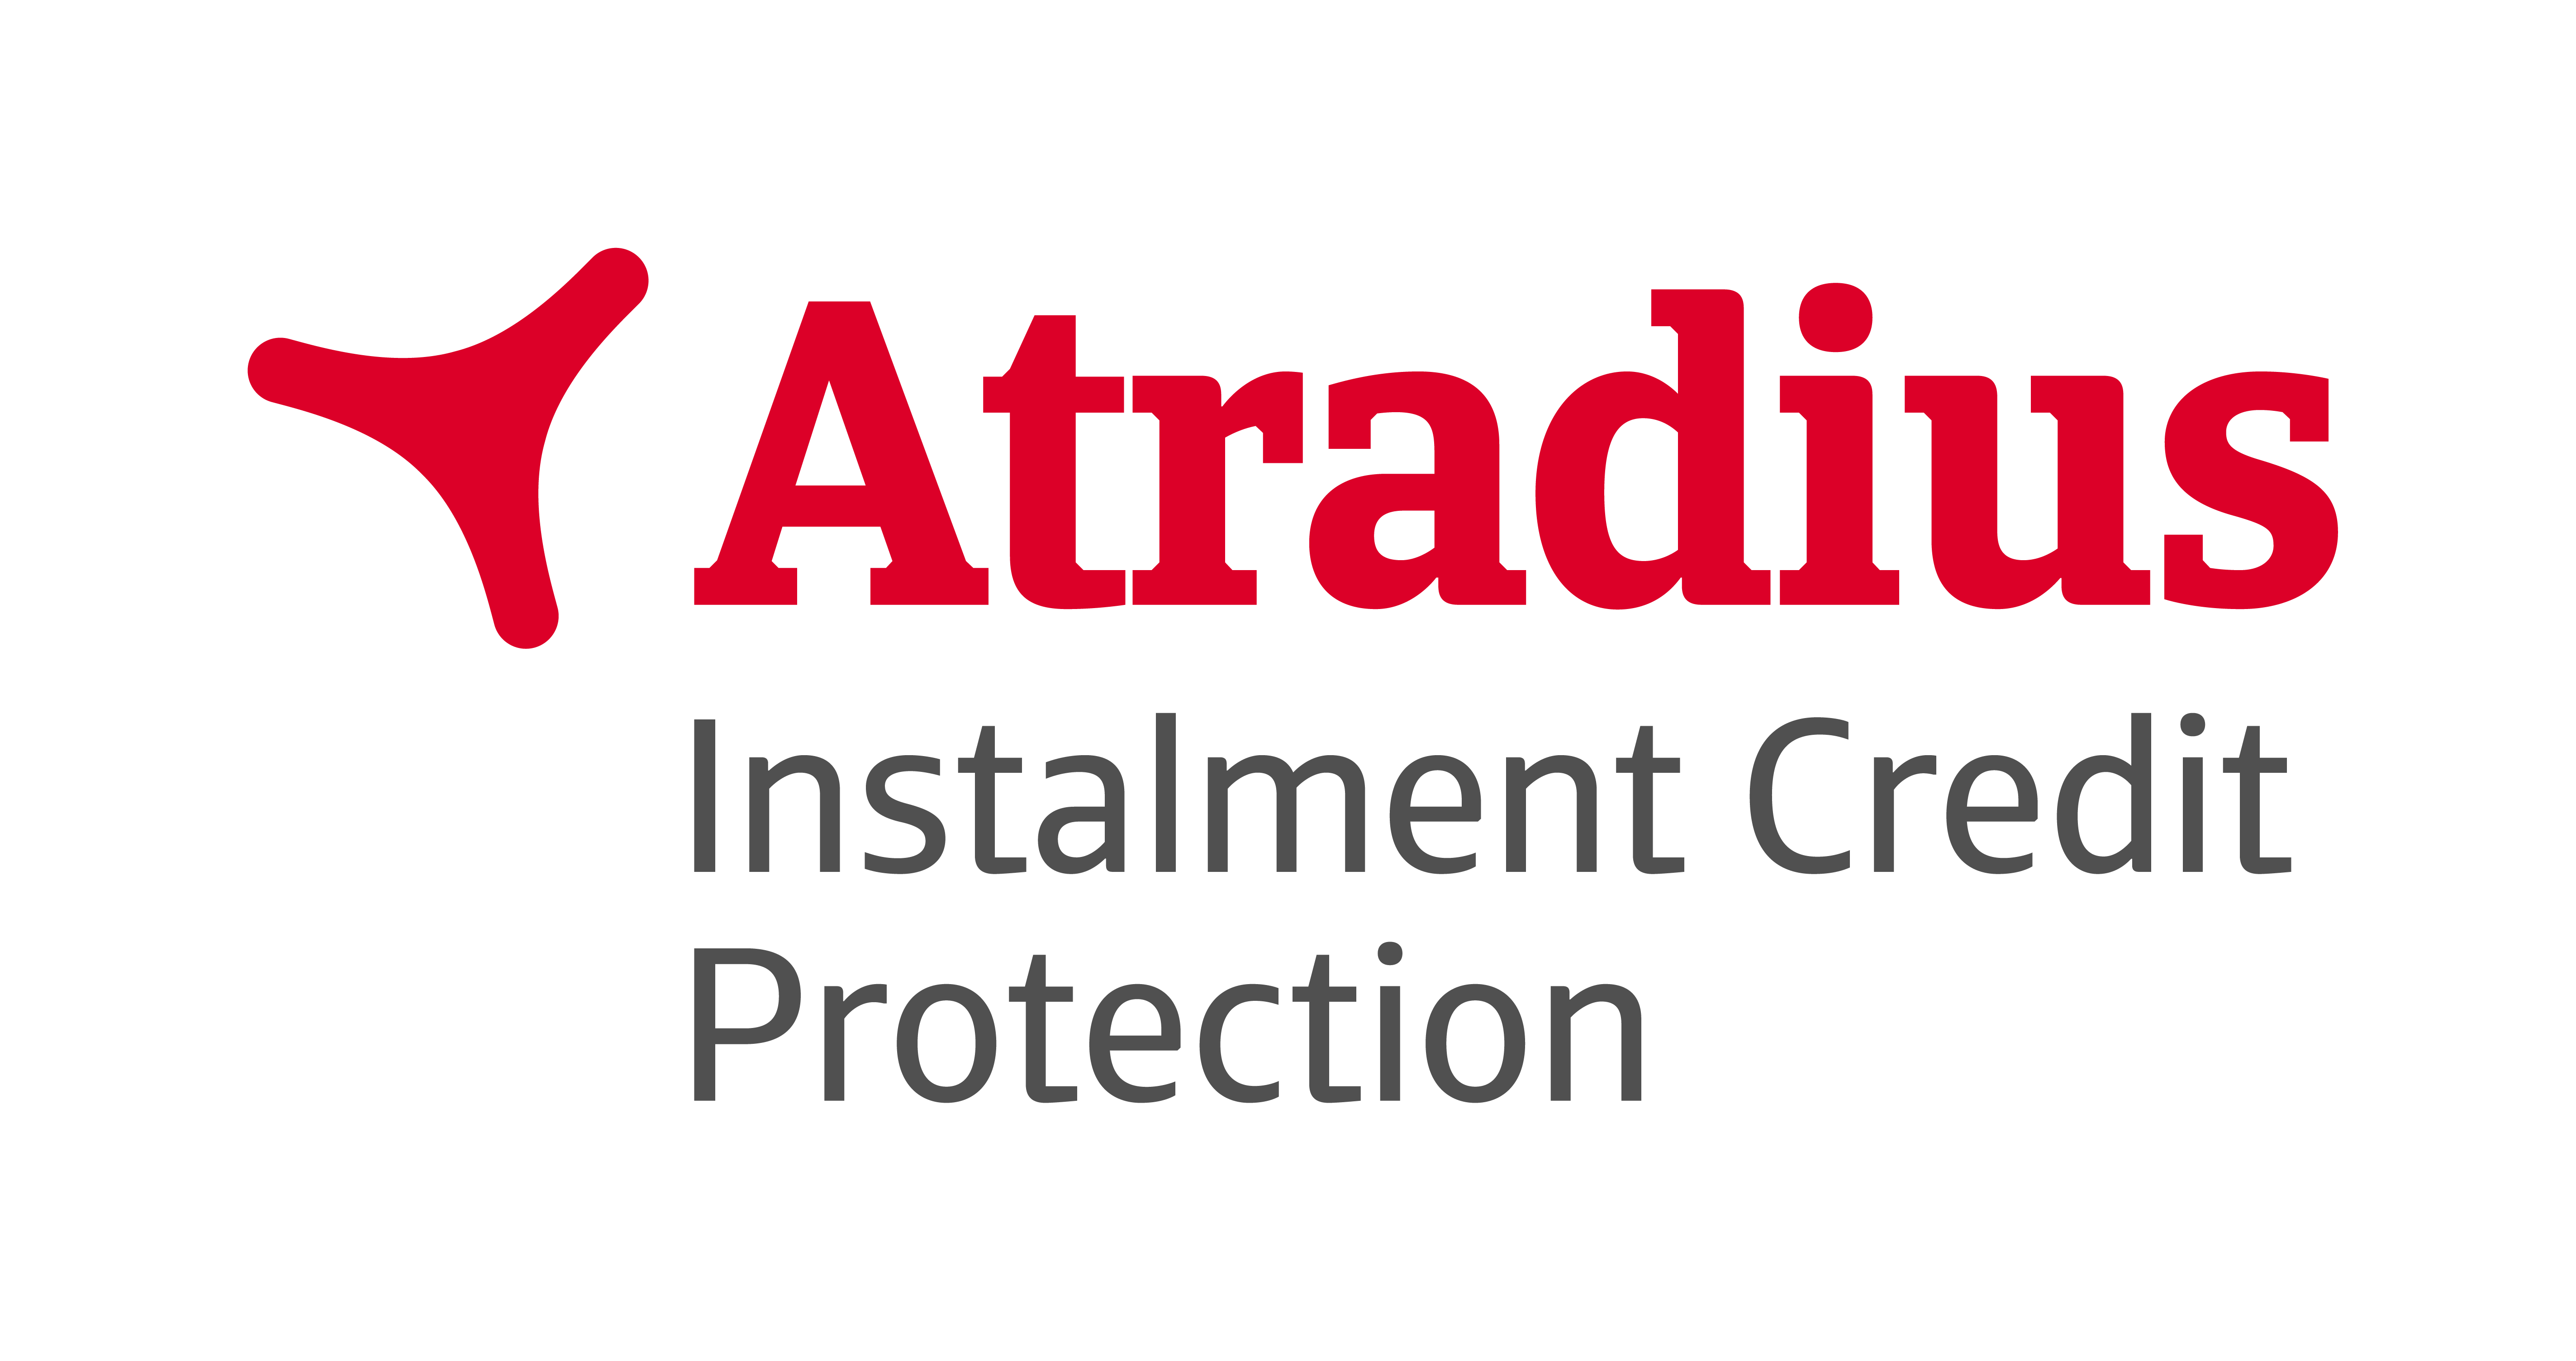 Atradius Logo